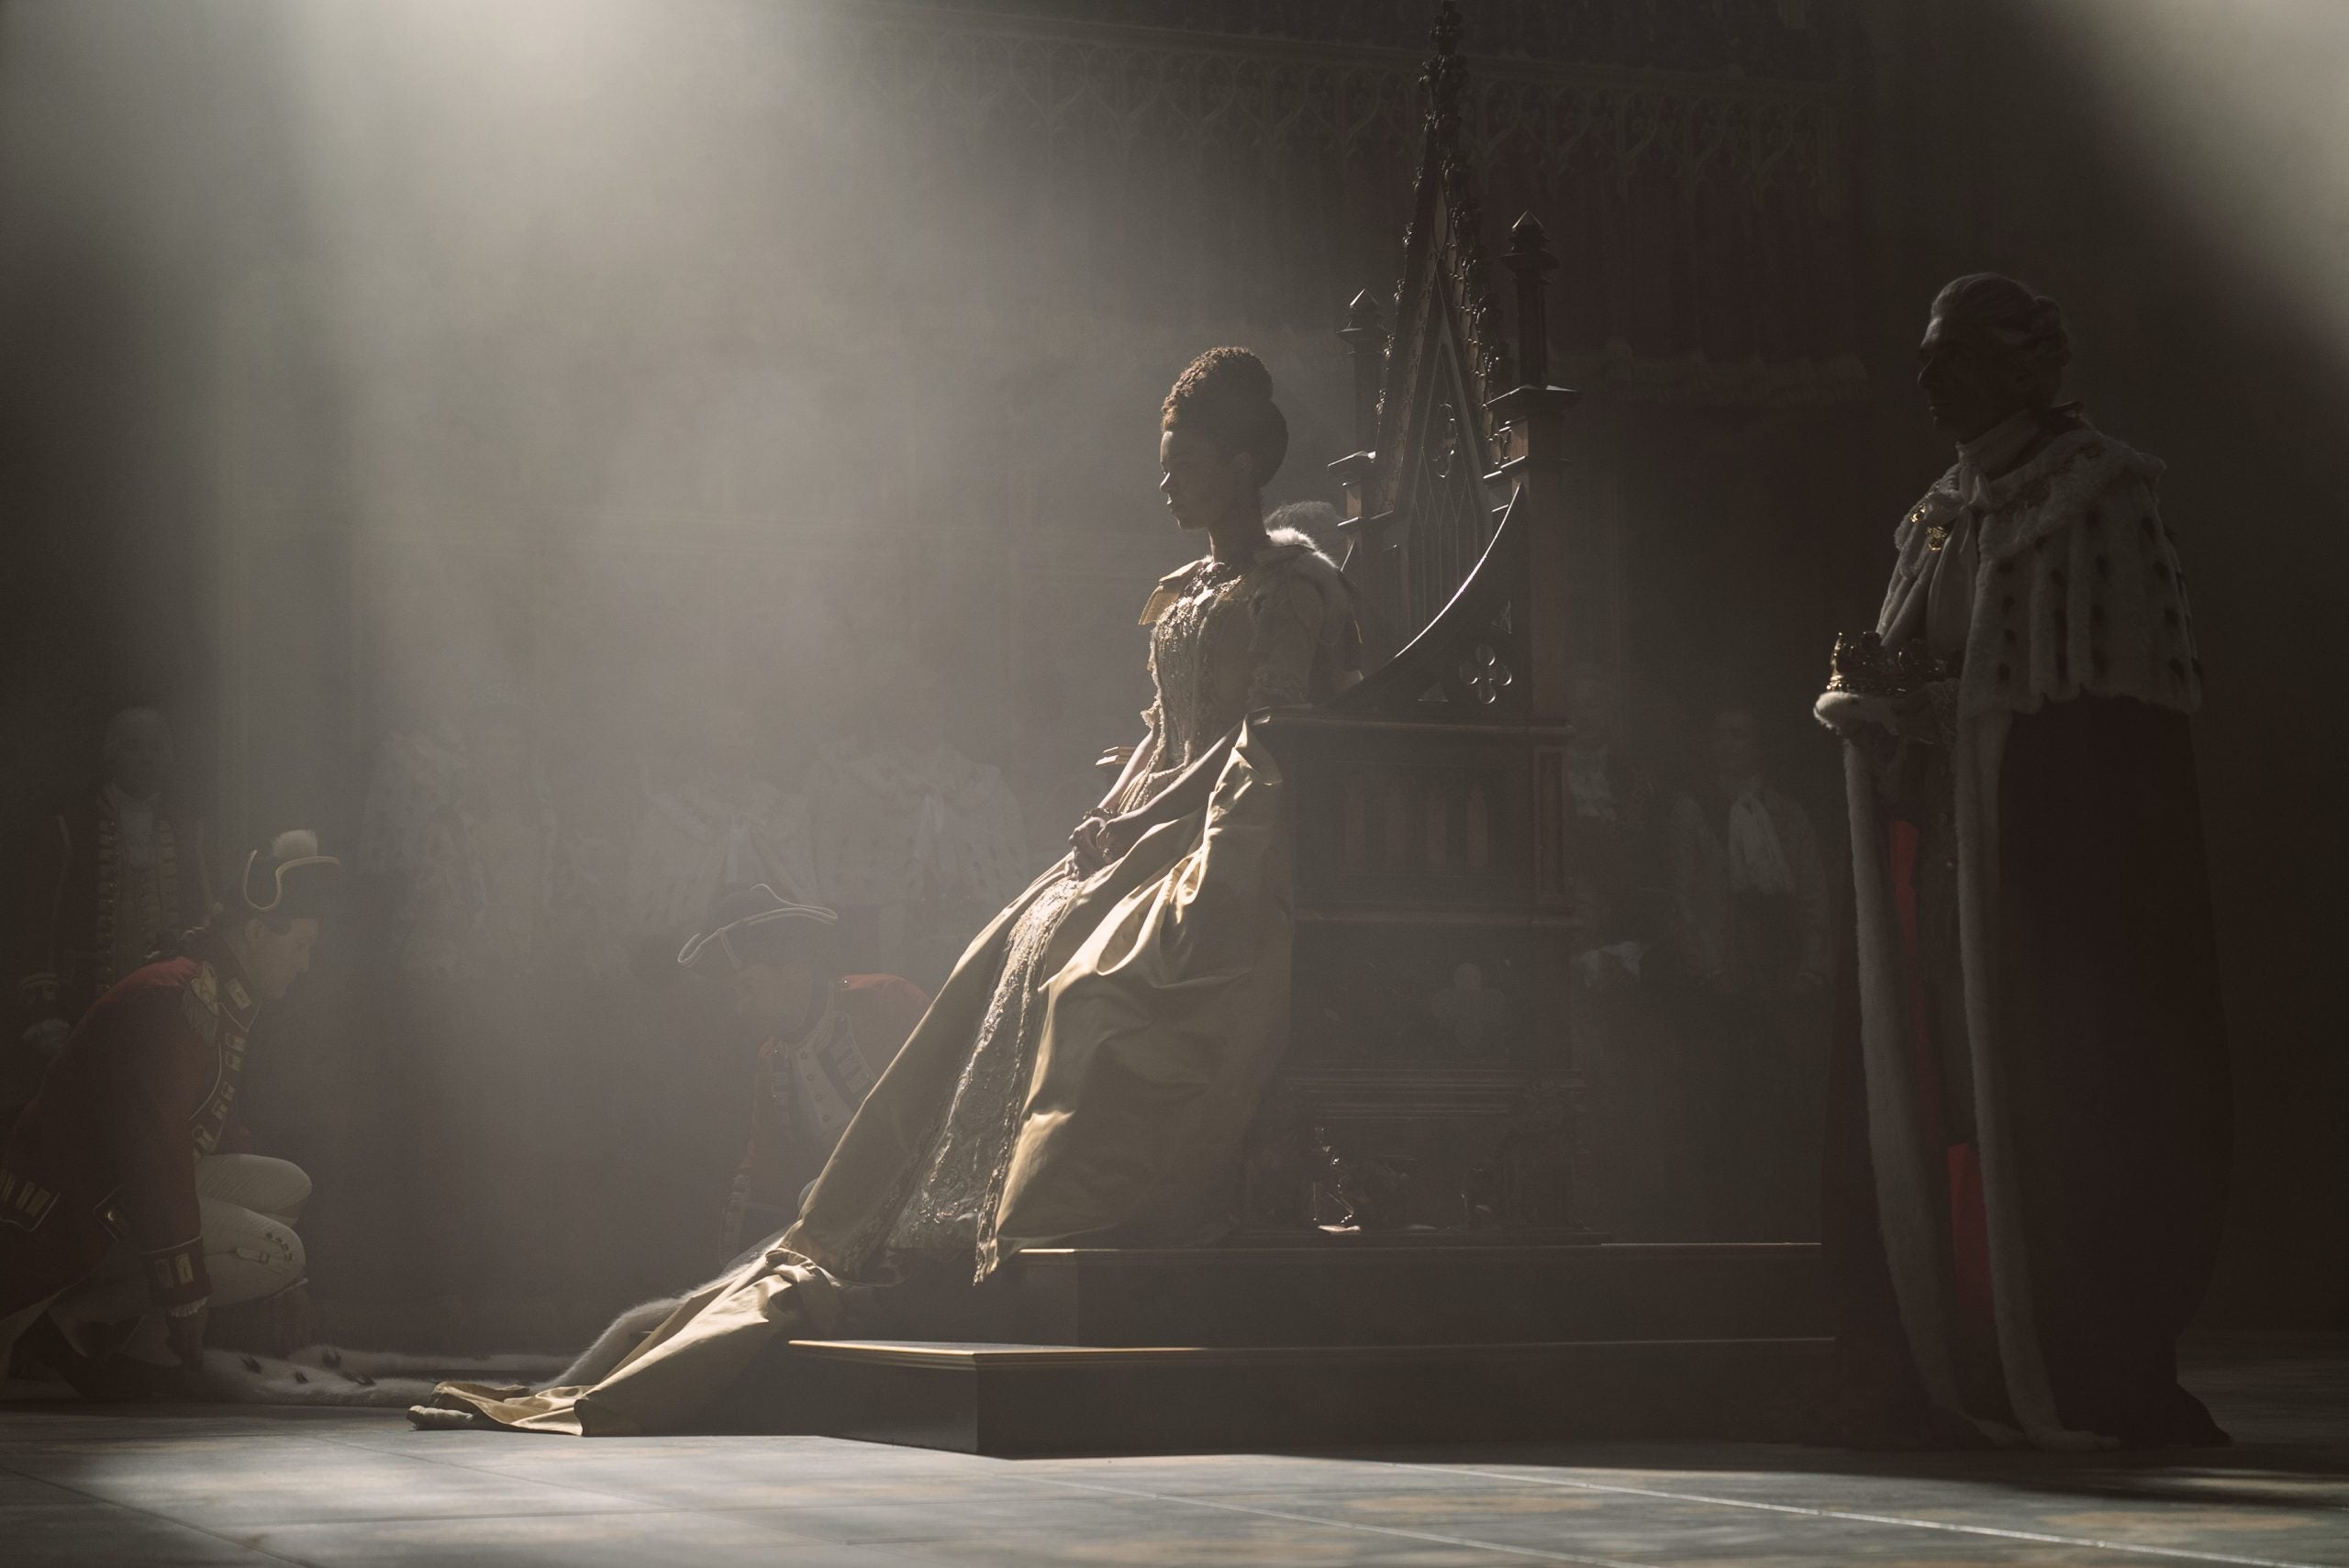 WATCH: Netflix Releases Teaser For ‘Queen Charlotte: A Bridgerton Story’